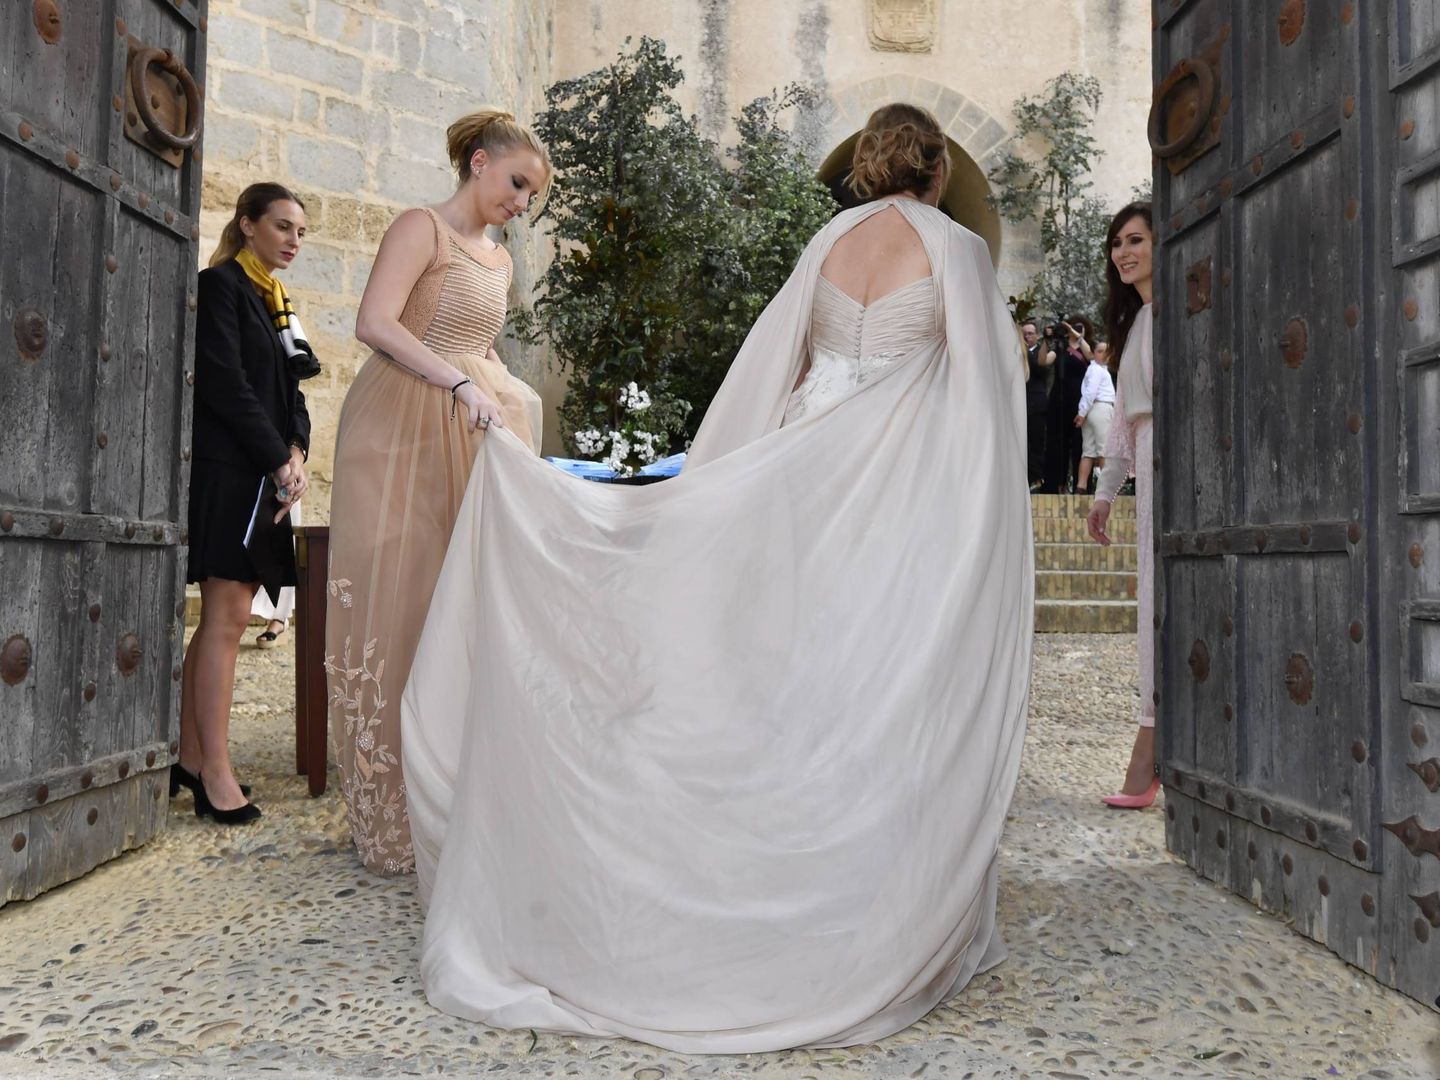  La novia, entrando al castillo. (Cordon Press)